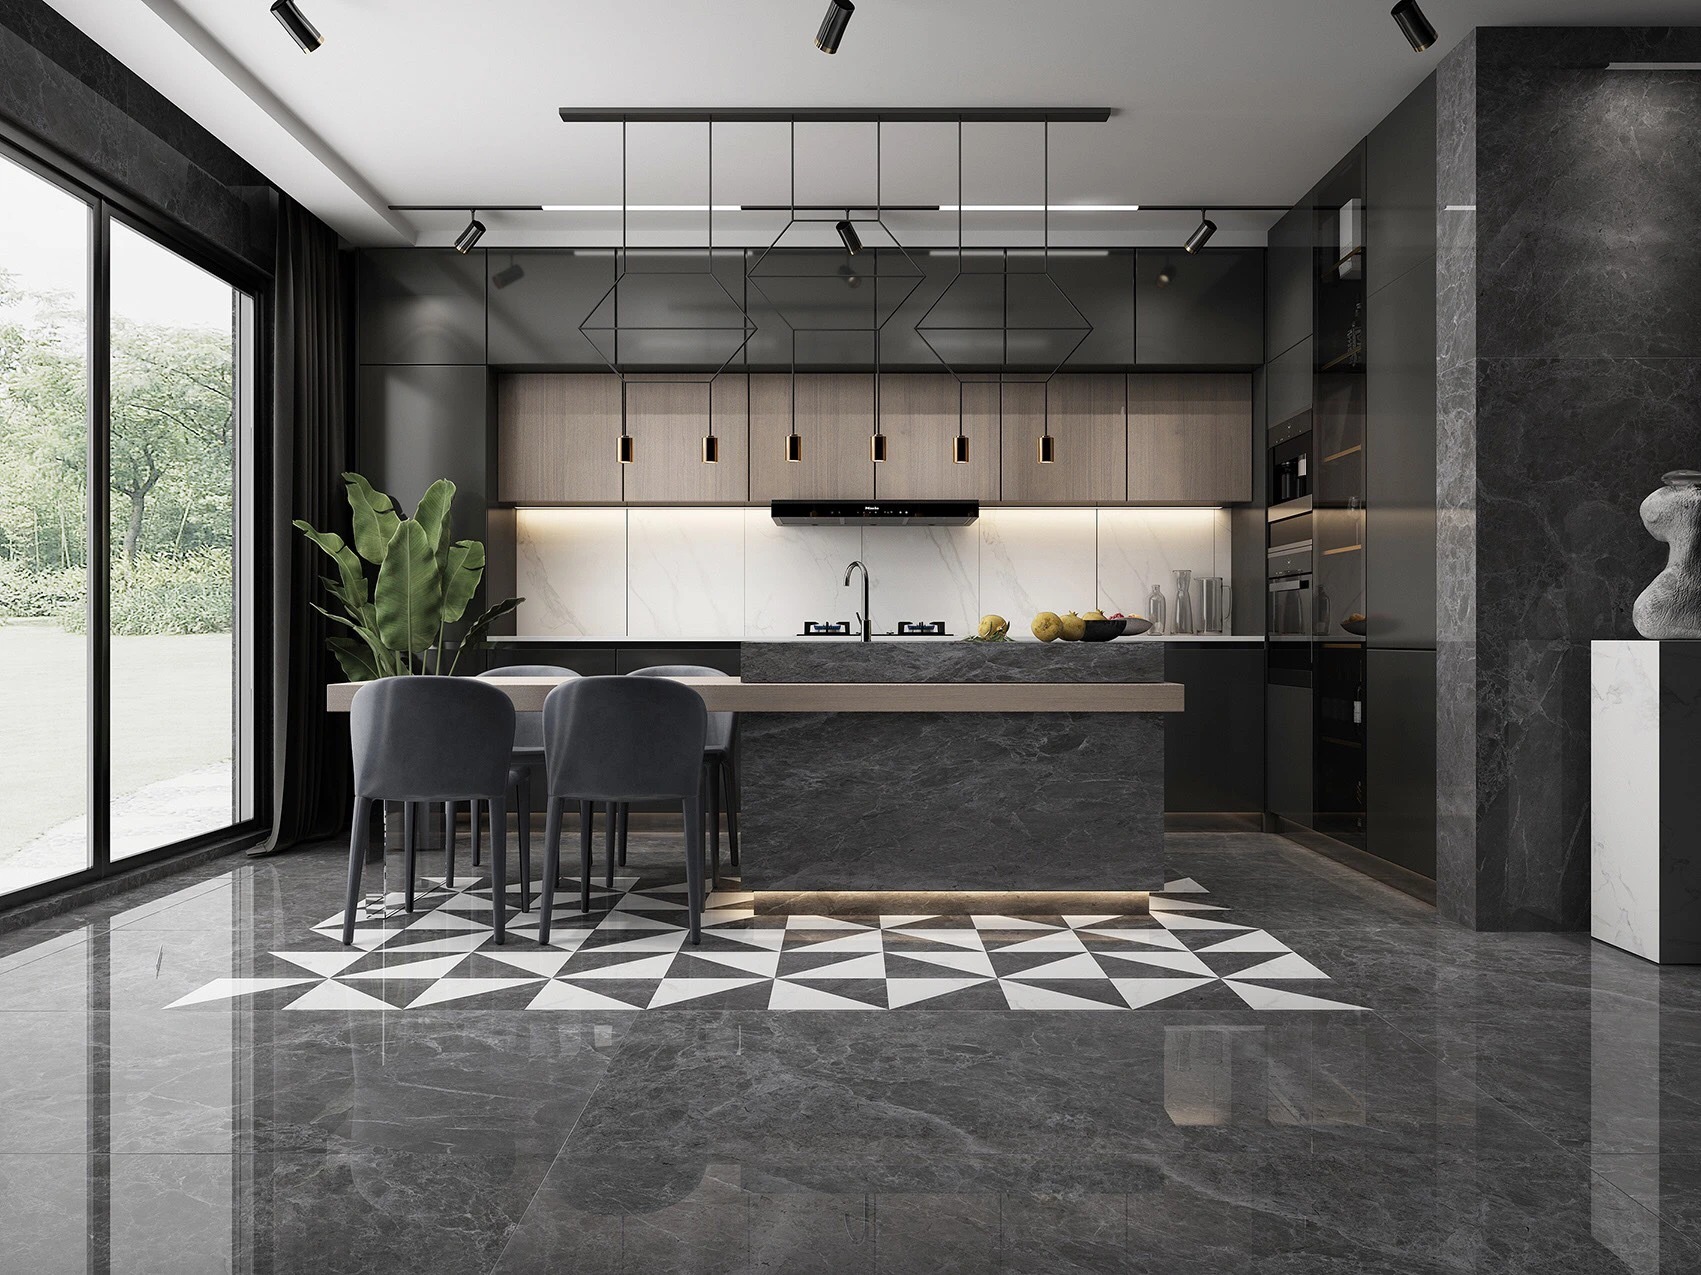 Gạch khổ lớn 90x90 màu xám đen ốp tường phòng khách và bếp mang đến vẻ đẹp sang trọng, tạo nên không gian dùng chung tinh tế và đầy phong cách